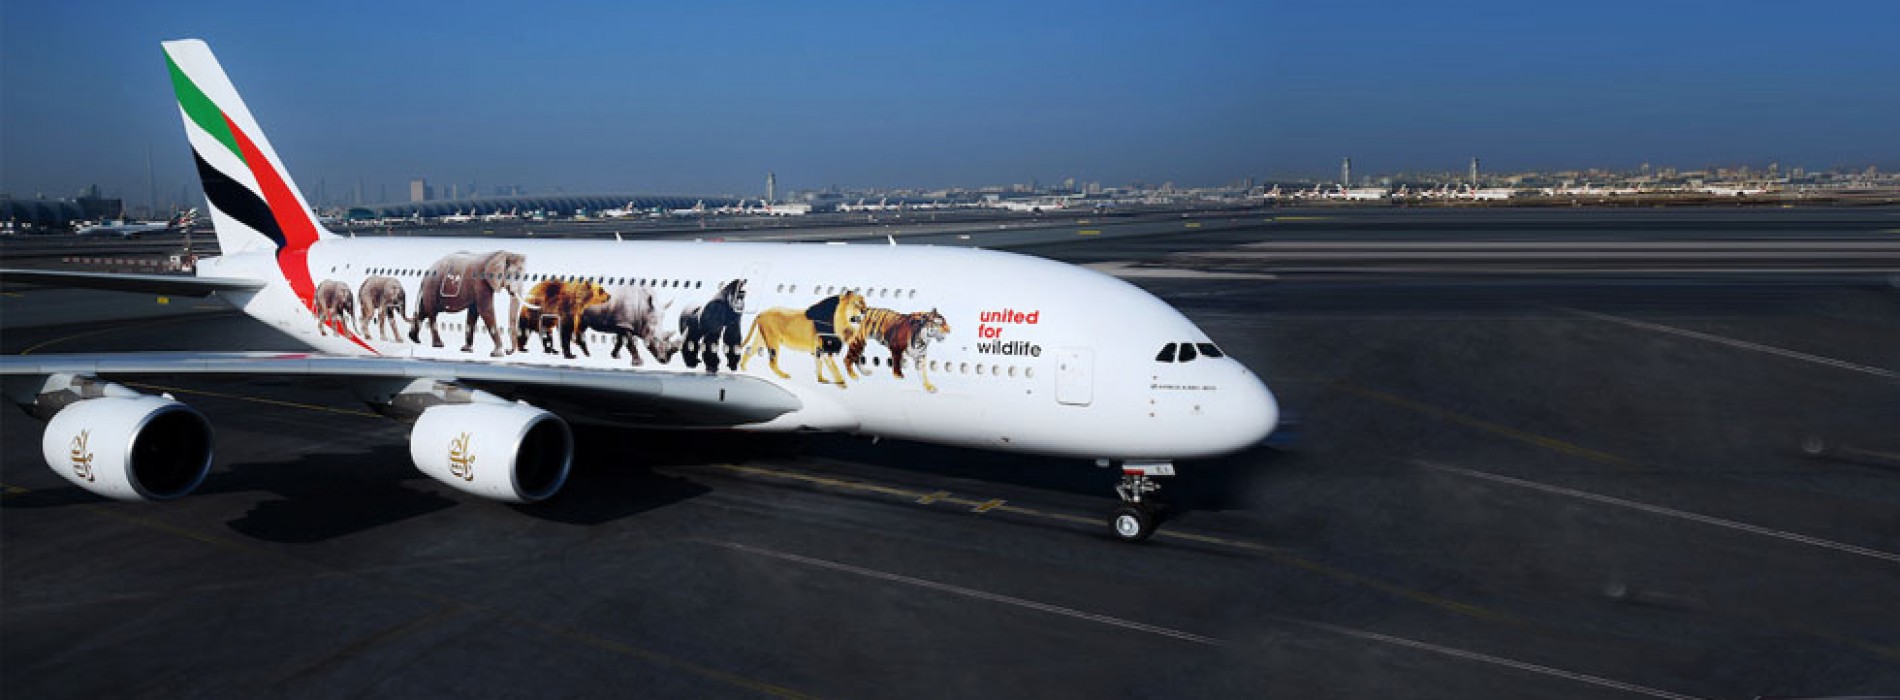 Emirates’ super jumbo message against illegal wildlife trade